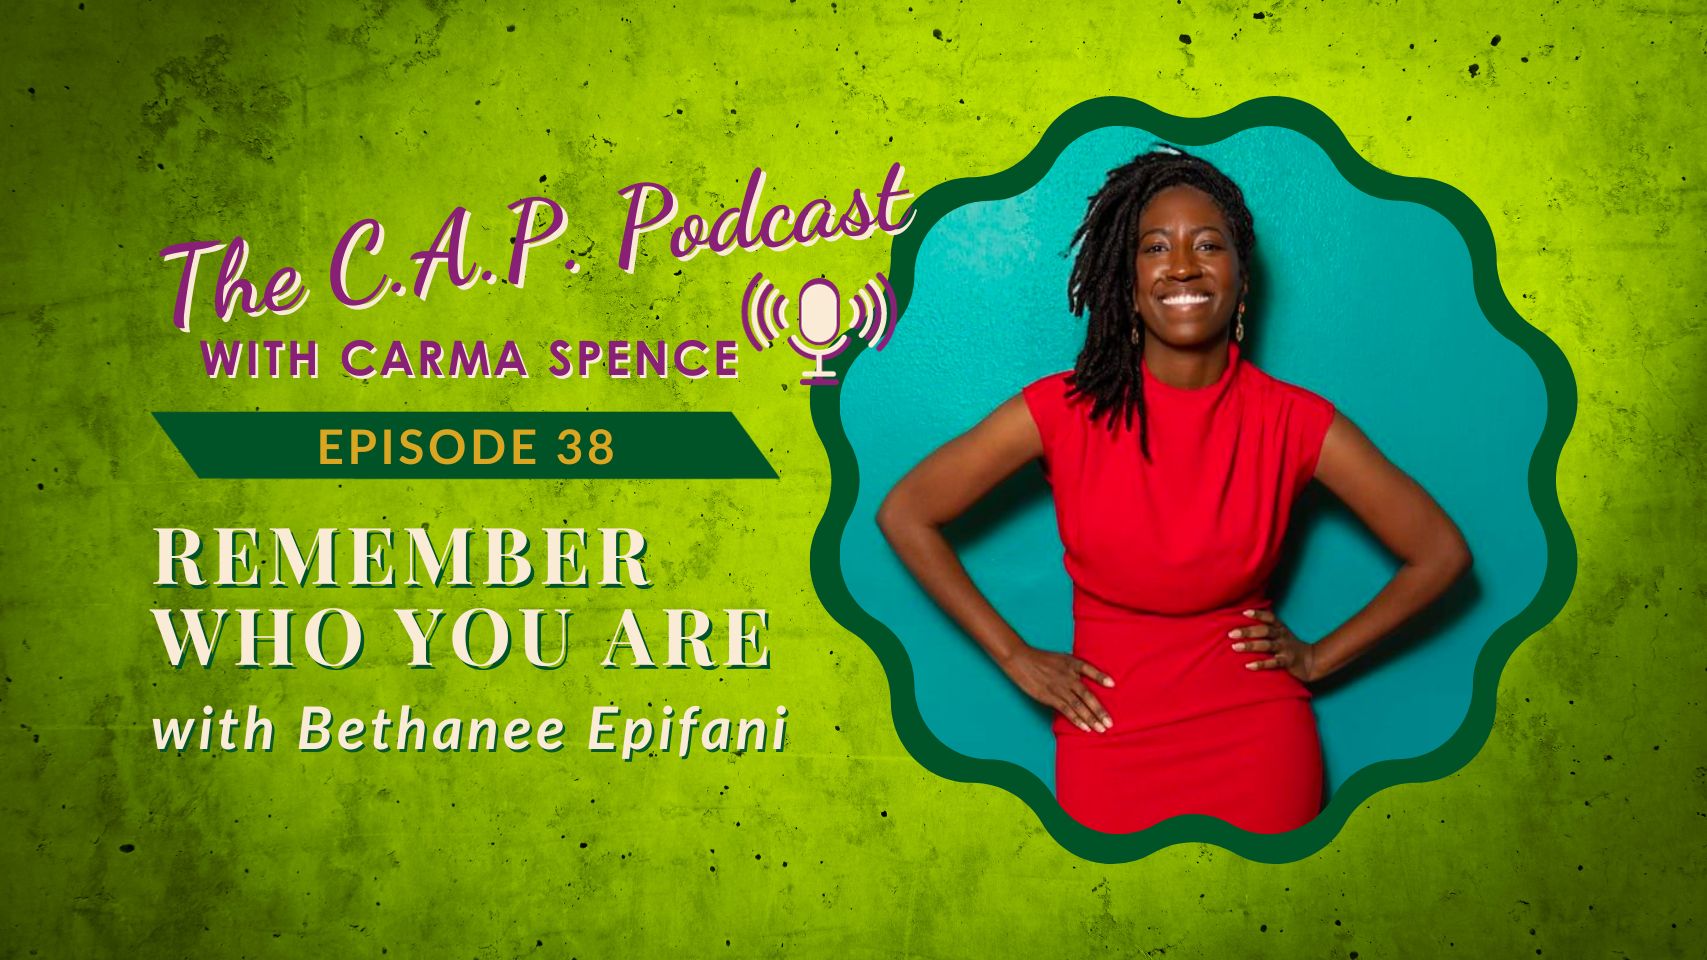 CAP Podcast Episode 38 Bethanee Epifani